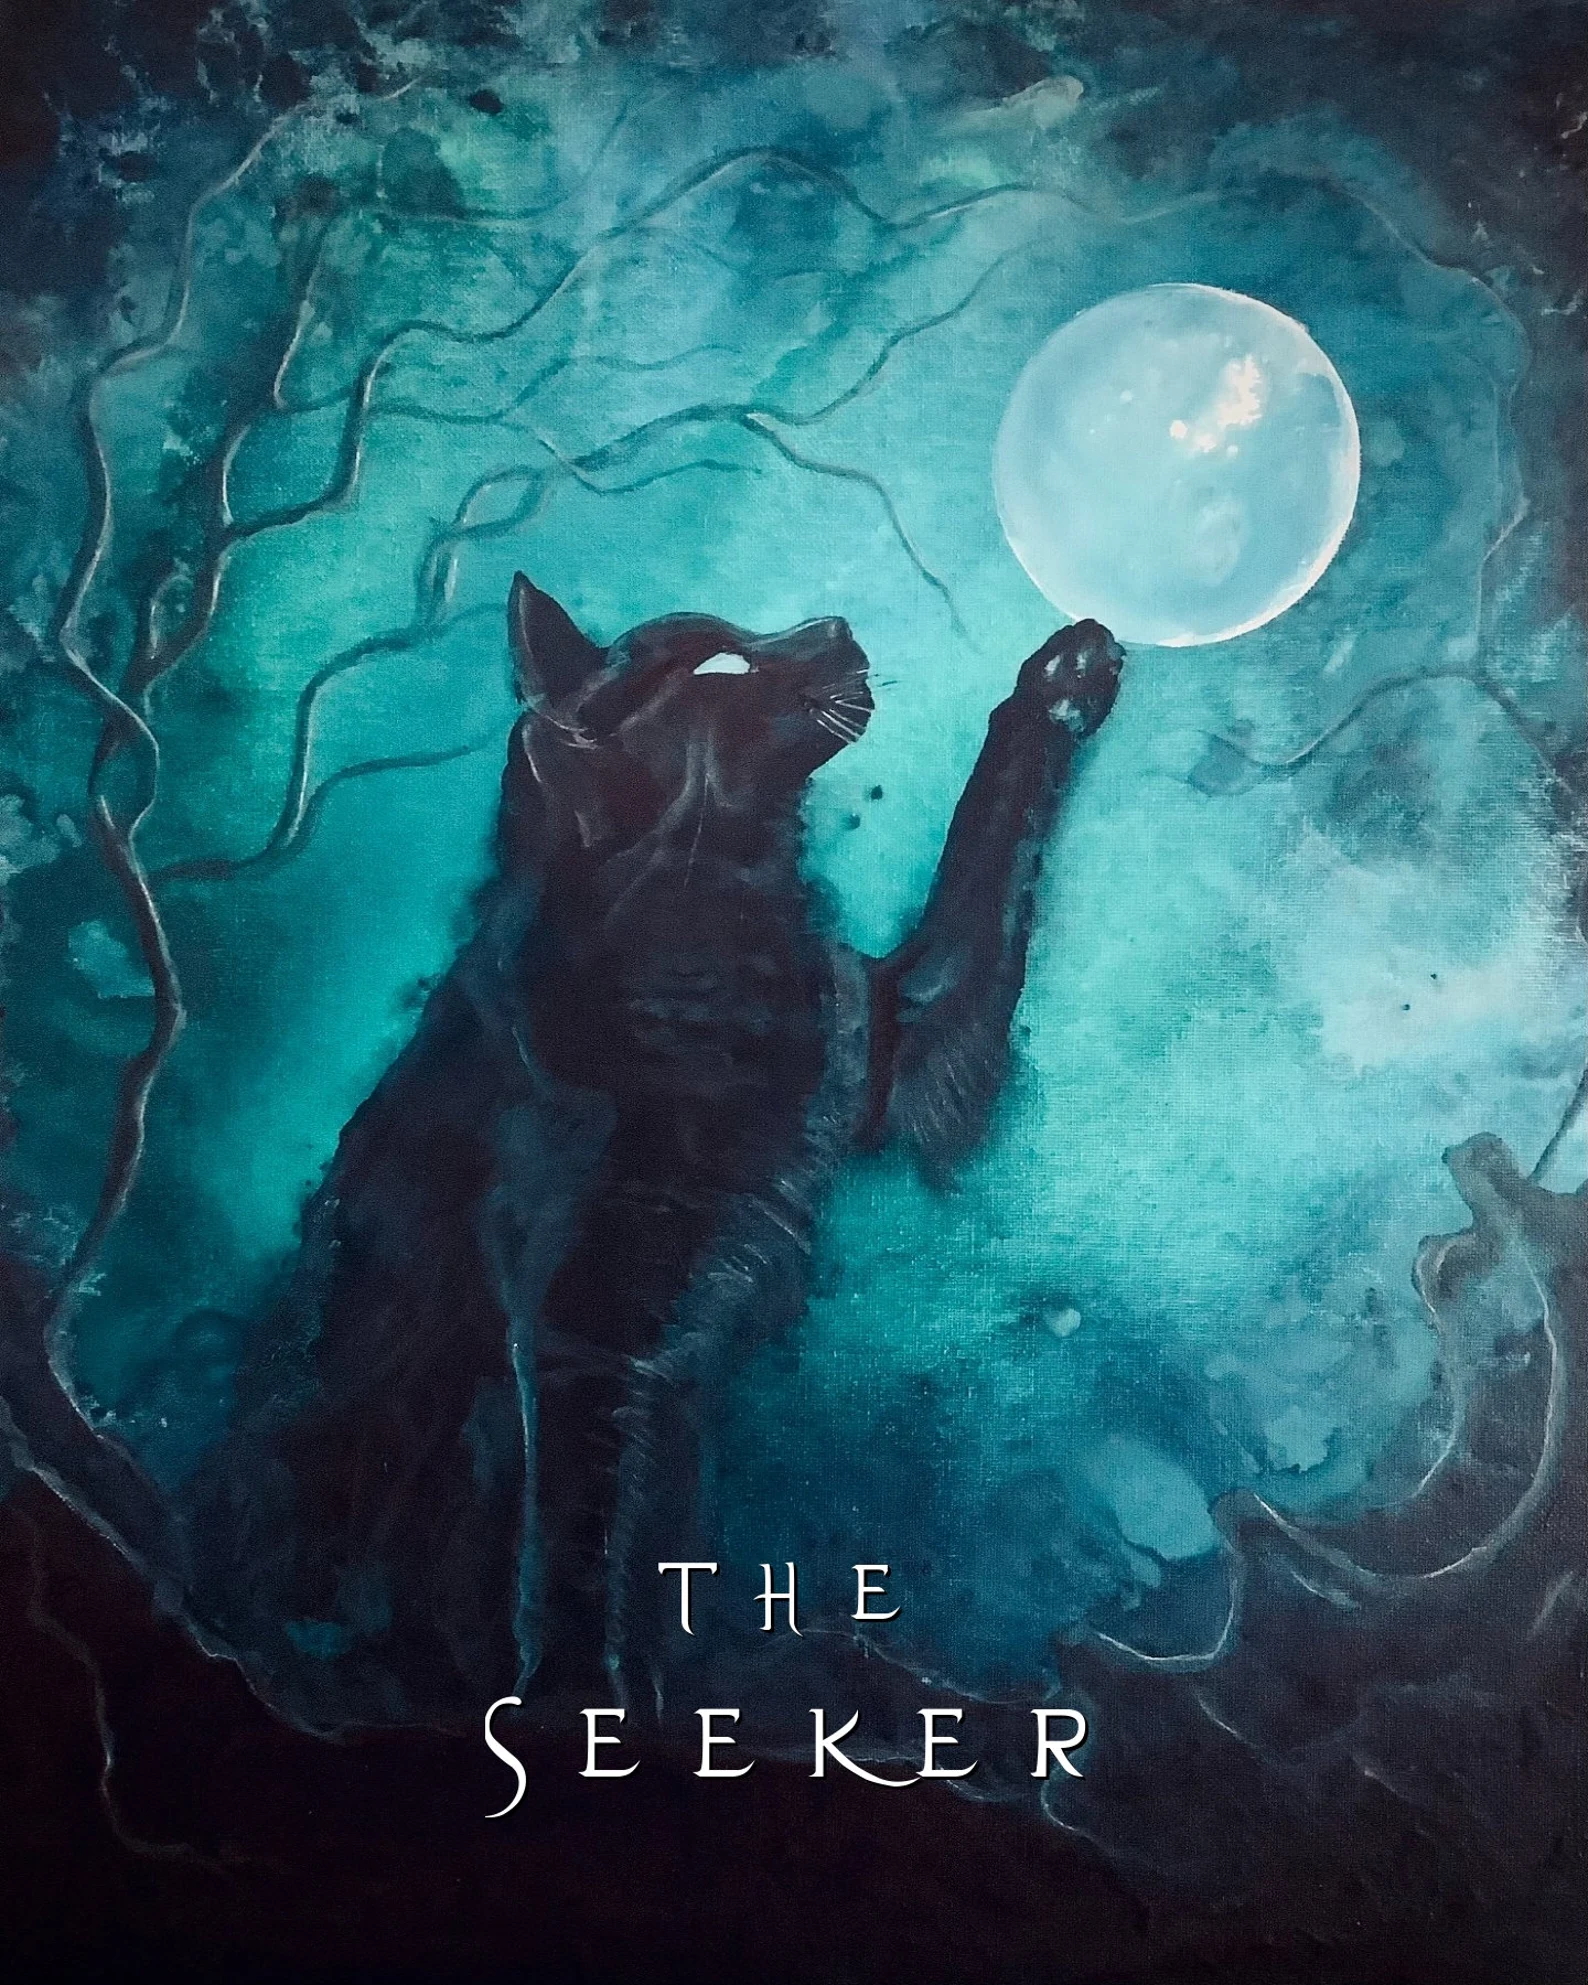 1. The Seeker